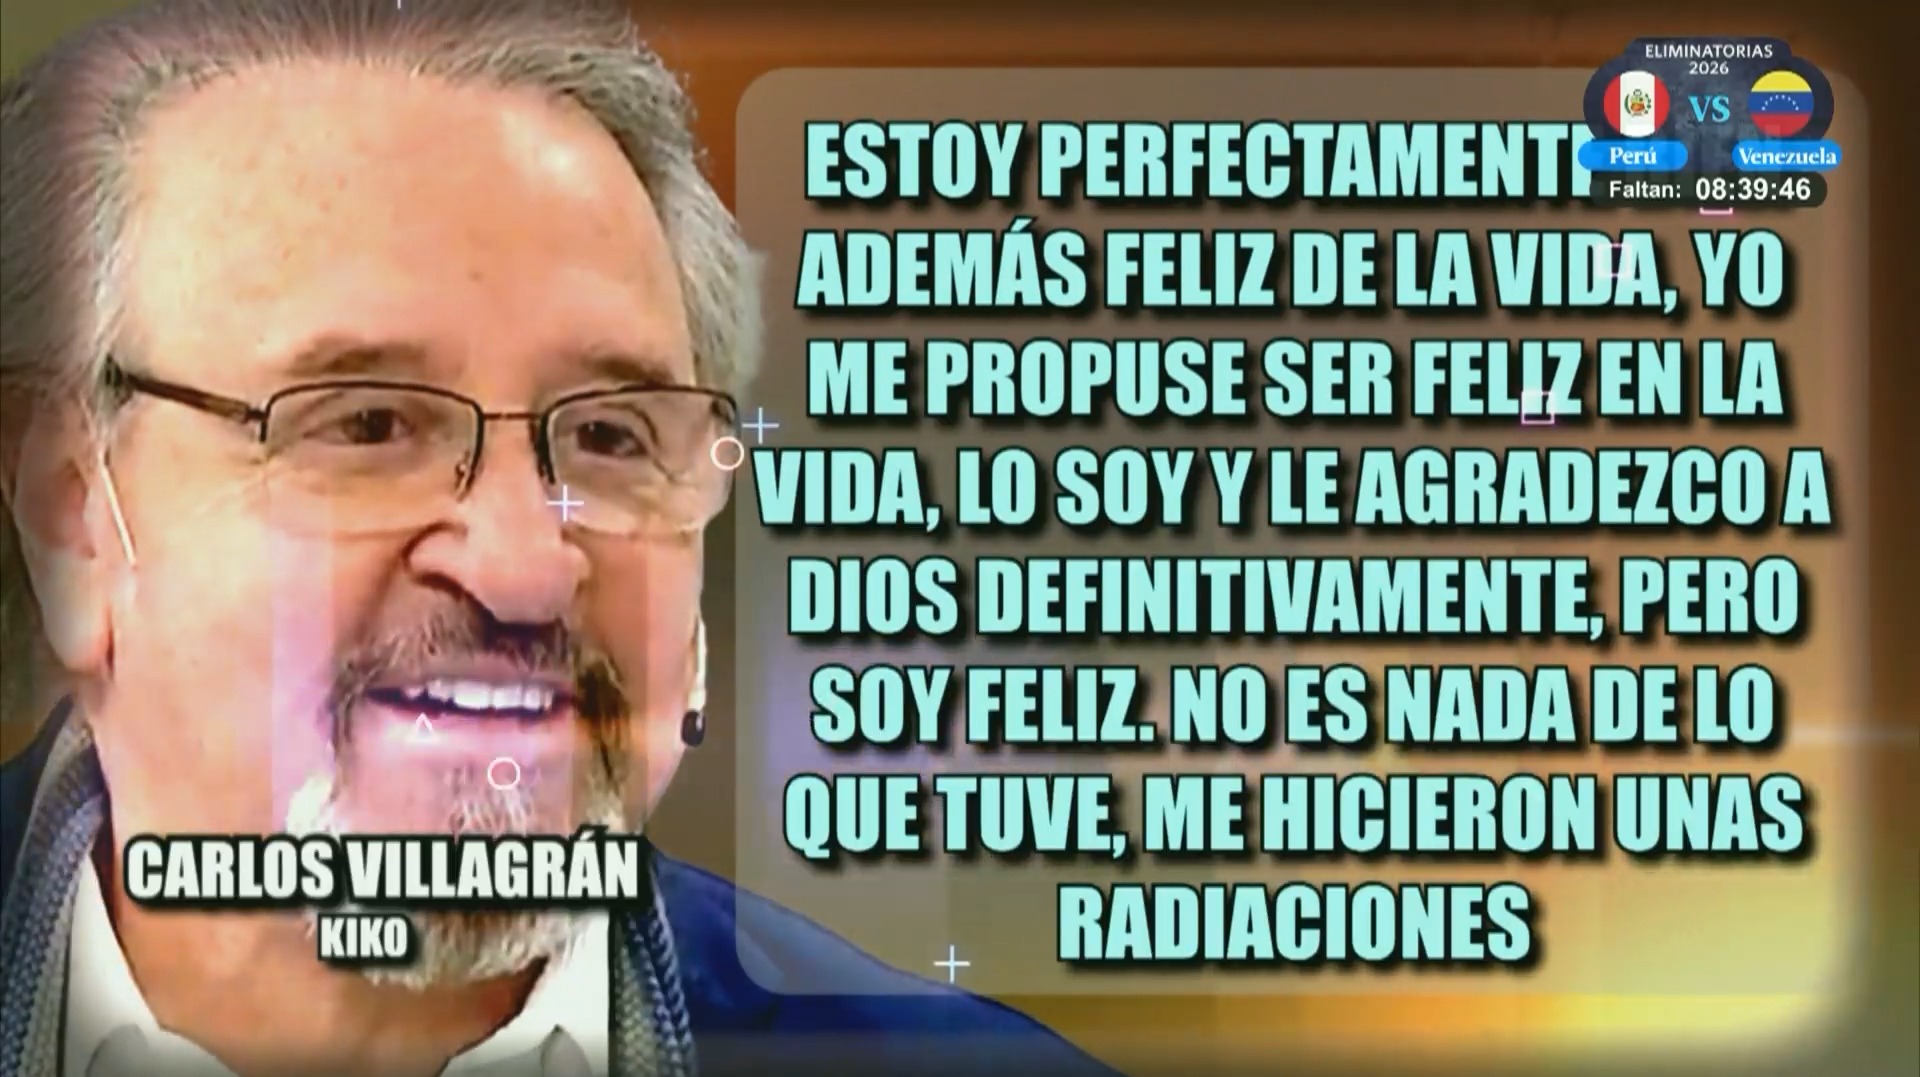 Carlos Villagrán comentó que fue sometido a radiaciones, más no a quimiterapias/Foto: América Hoy